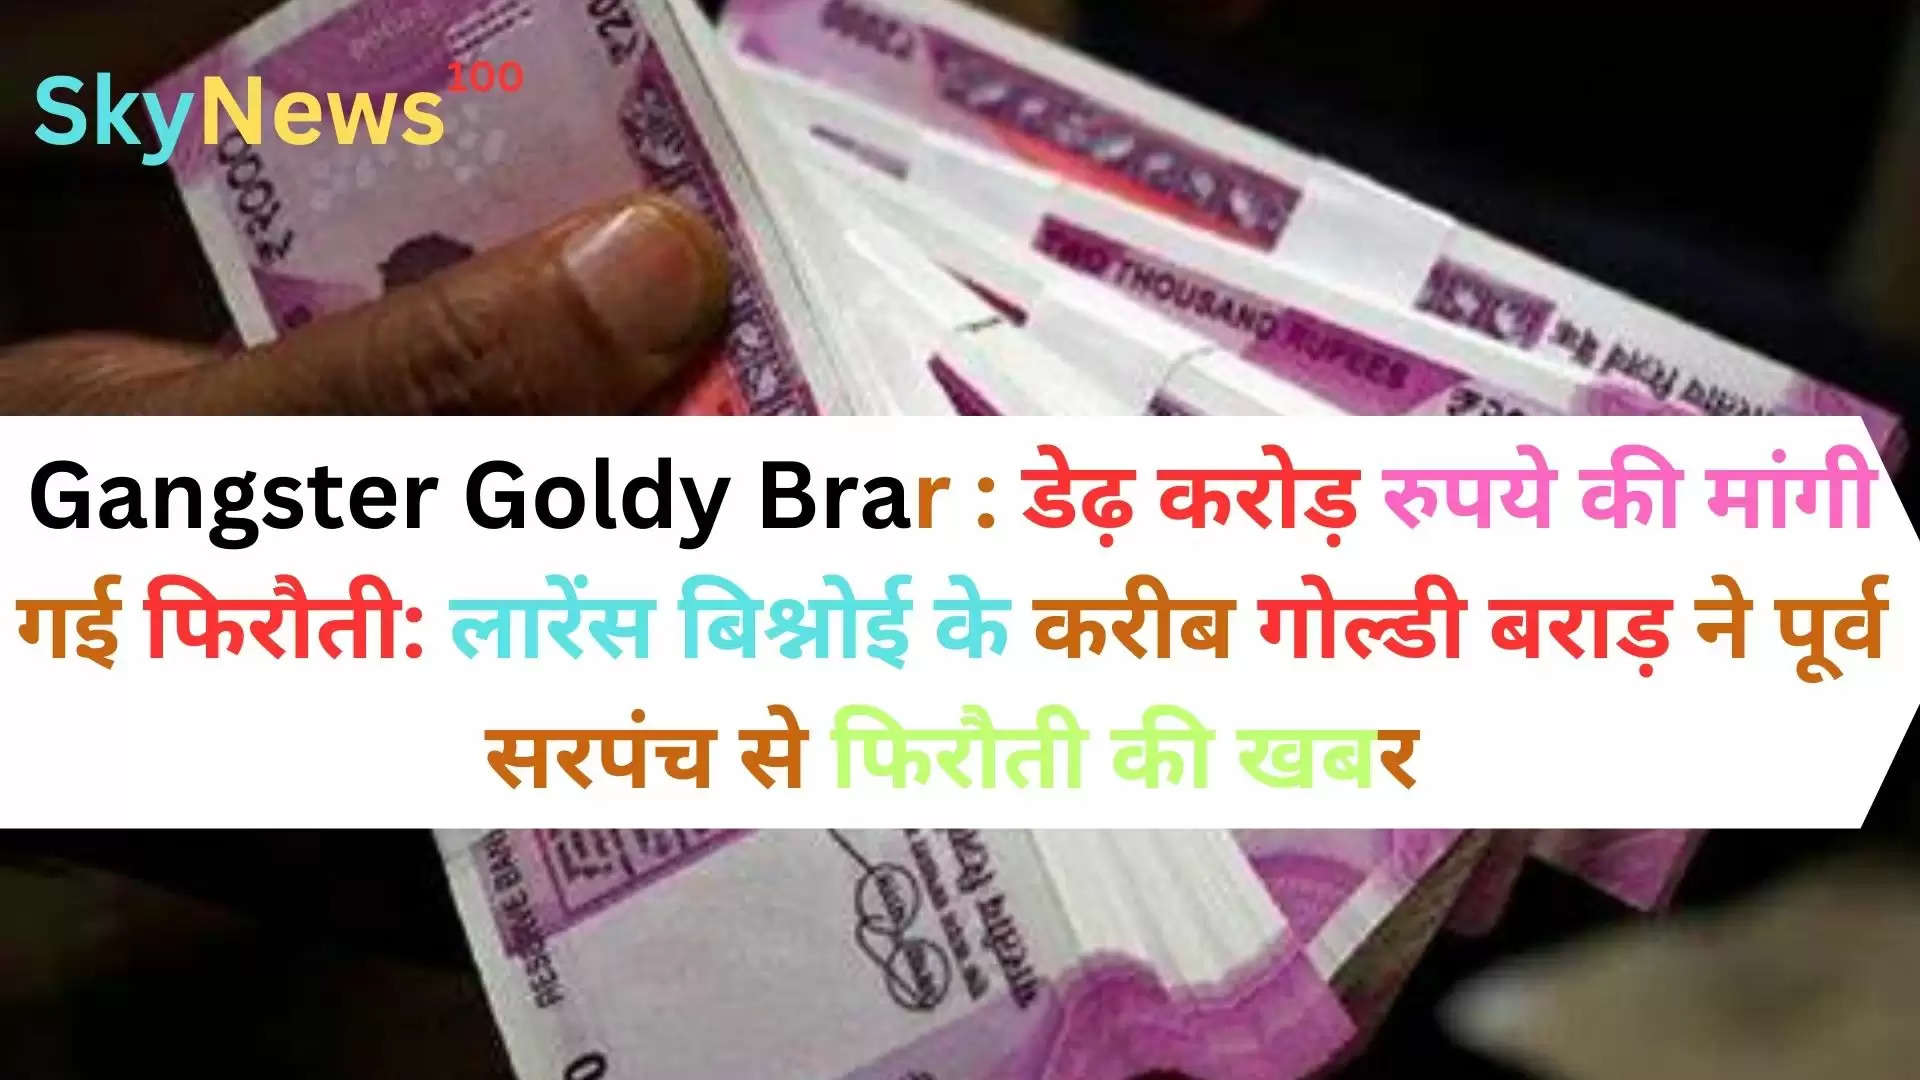 Gangster Goldy Brar : डेढ़ करोड़ रुपये की मांगी गई फिरौती: लारेंस बिश्नोई के करीब गोल्डी बराड़ ने पूर्व सरपंच से फिरौती की खबर